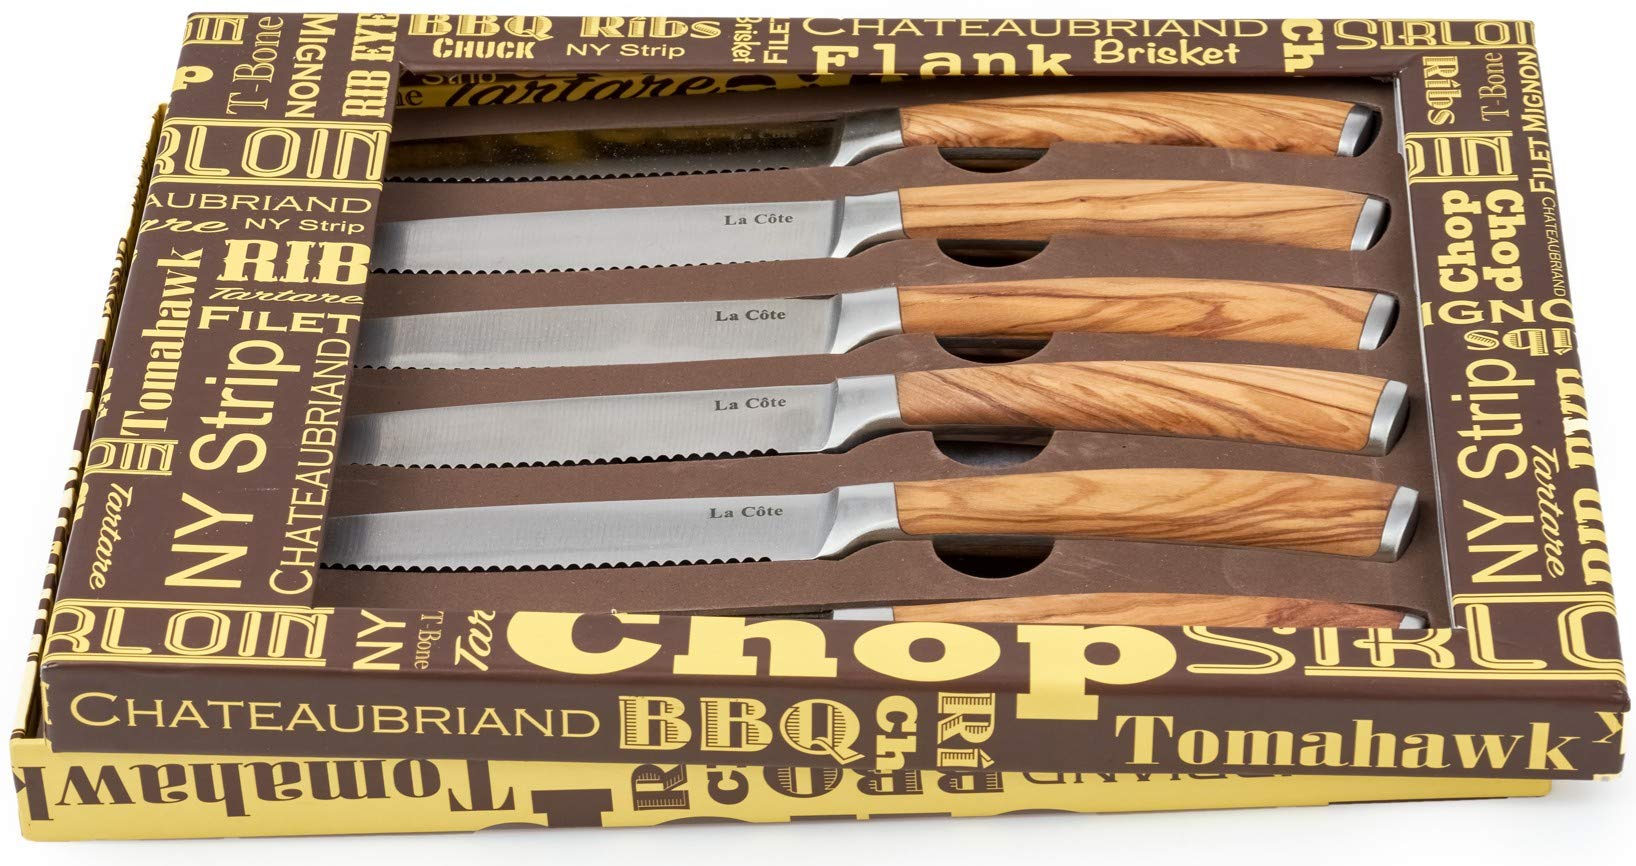 #5100USS - BONE STEAK KNIVES (6)